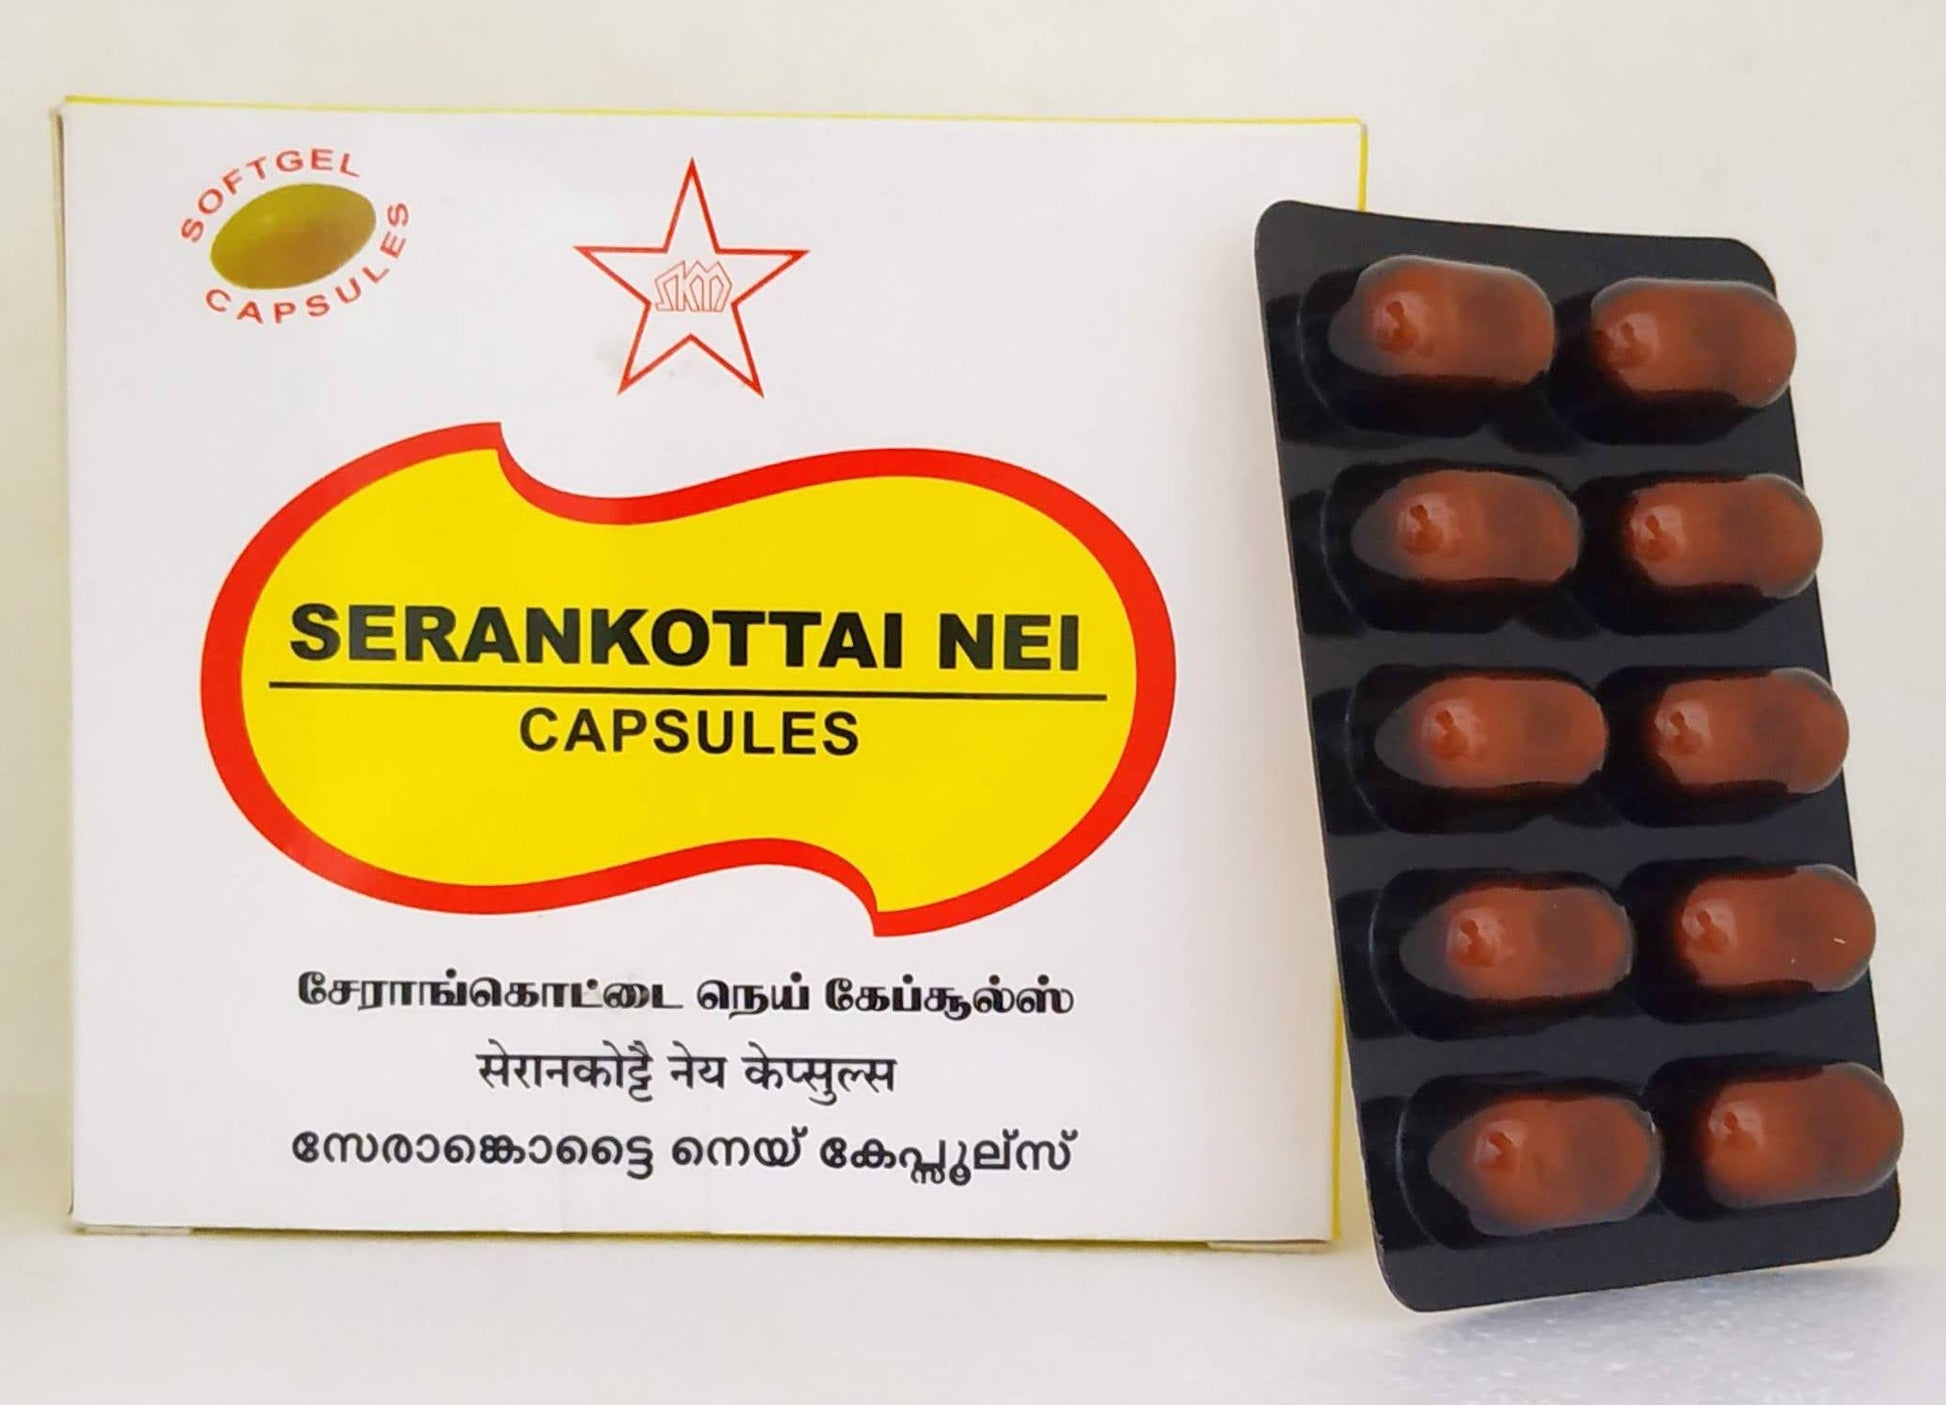 Shop Serankottai Nei Capsules - 10Capsules at price 61.00 from SKM Online - Ayush Care